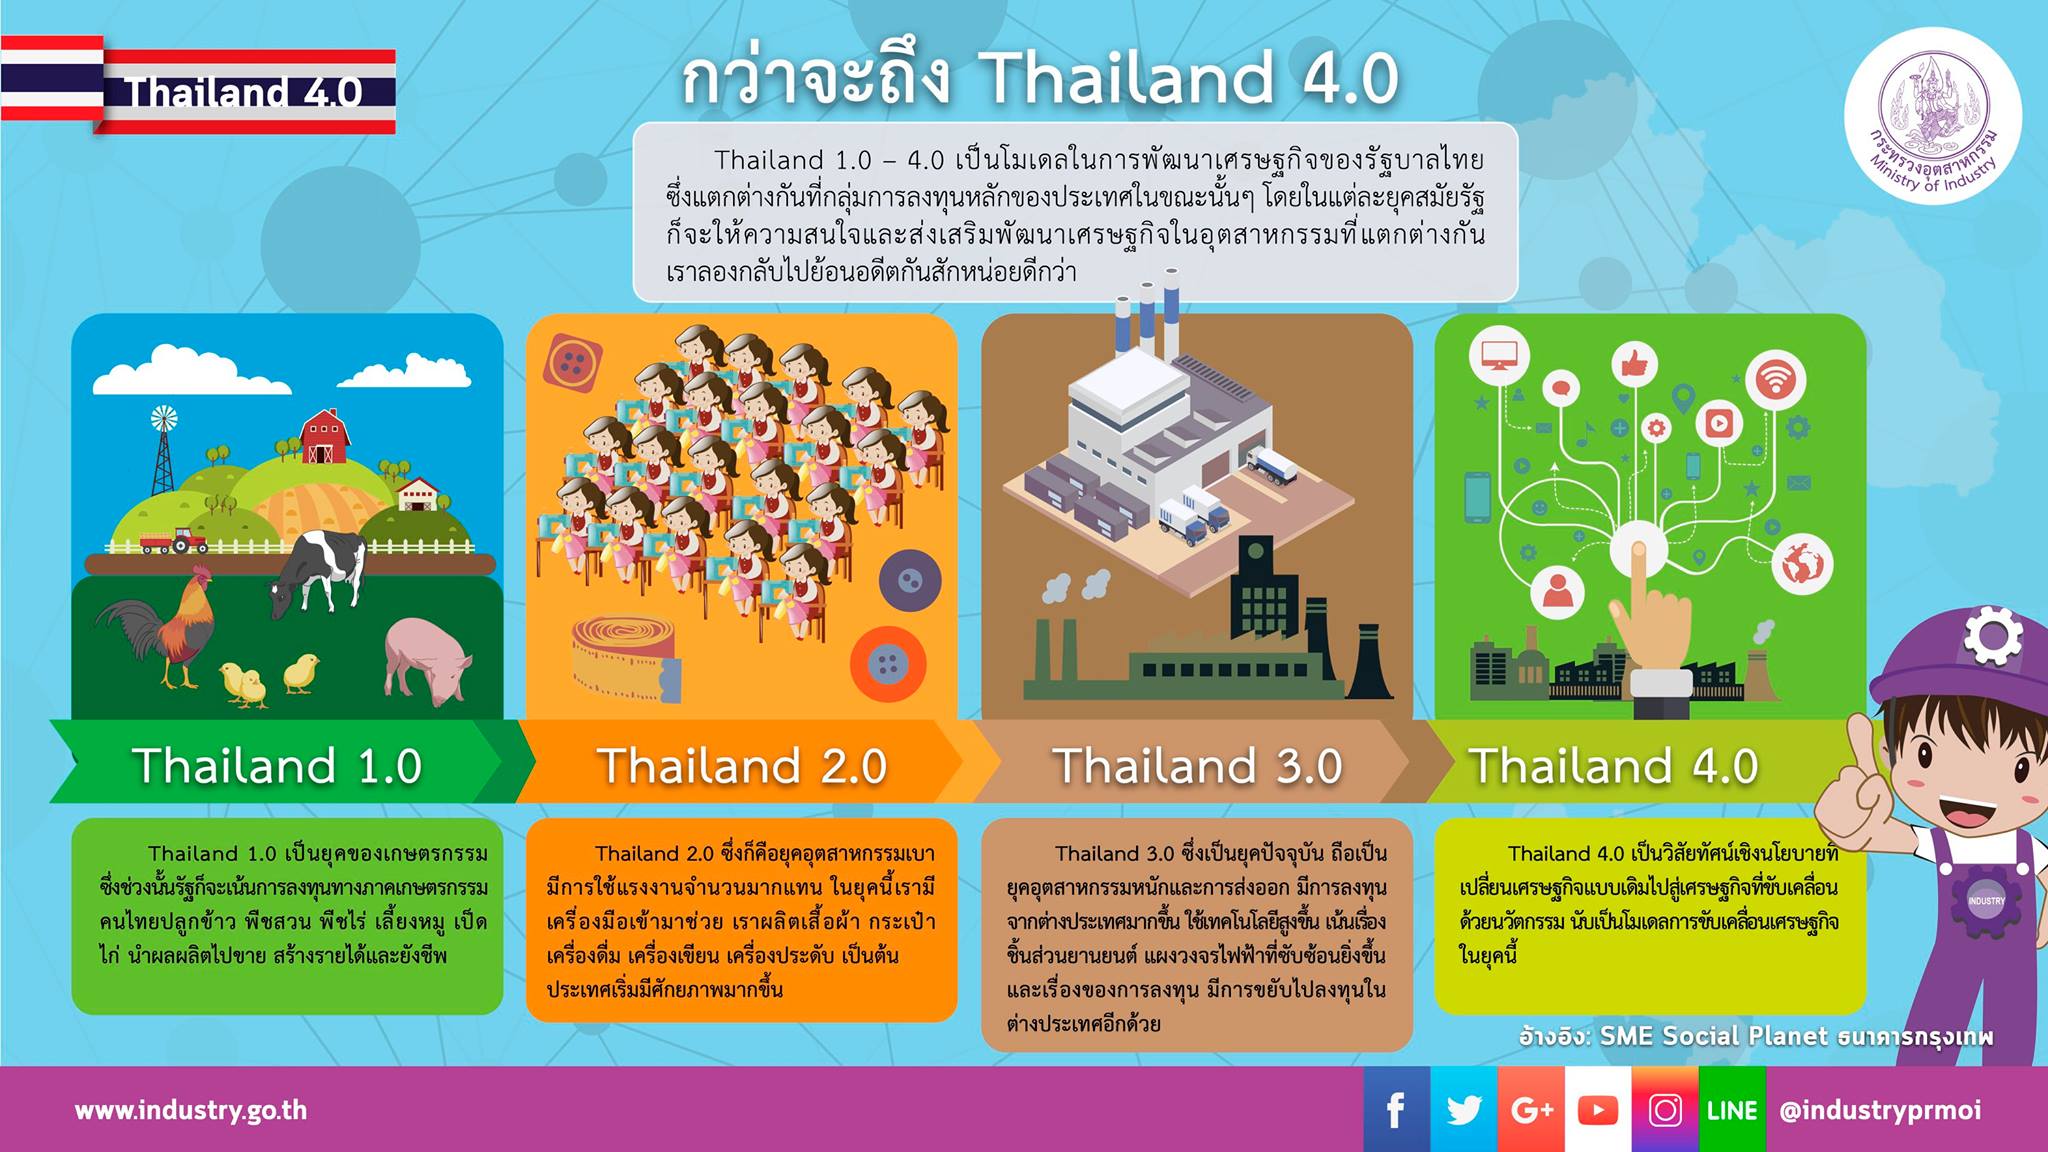 ปัญหาการเมืองไทยในปัจจุบัน 2567